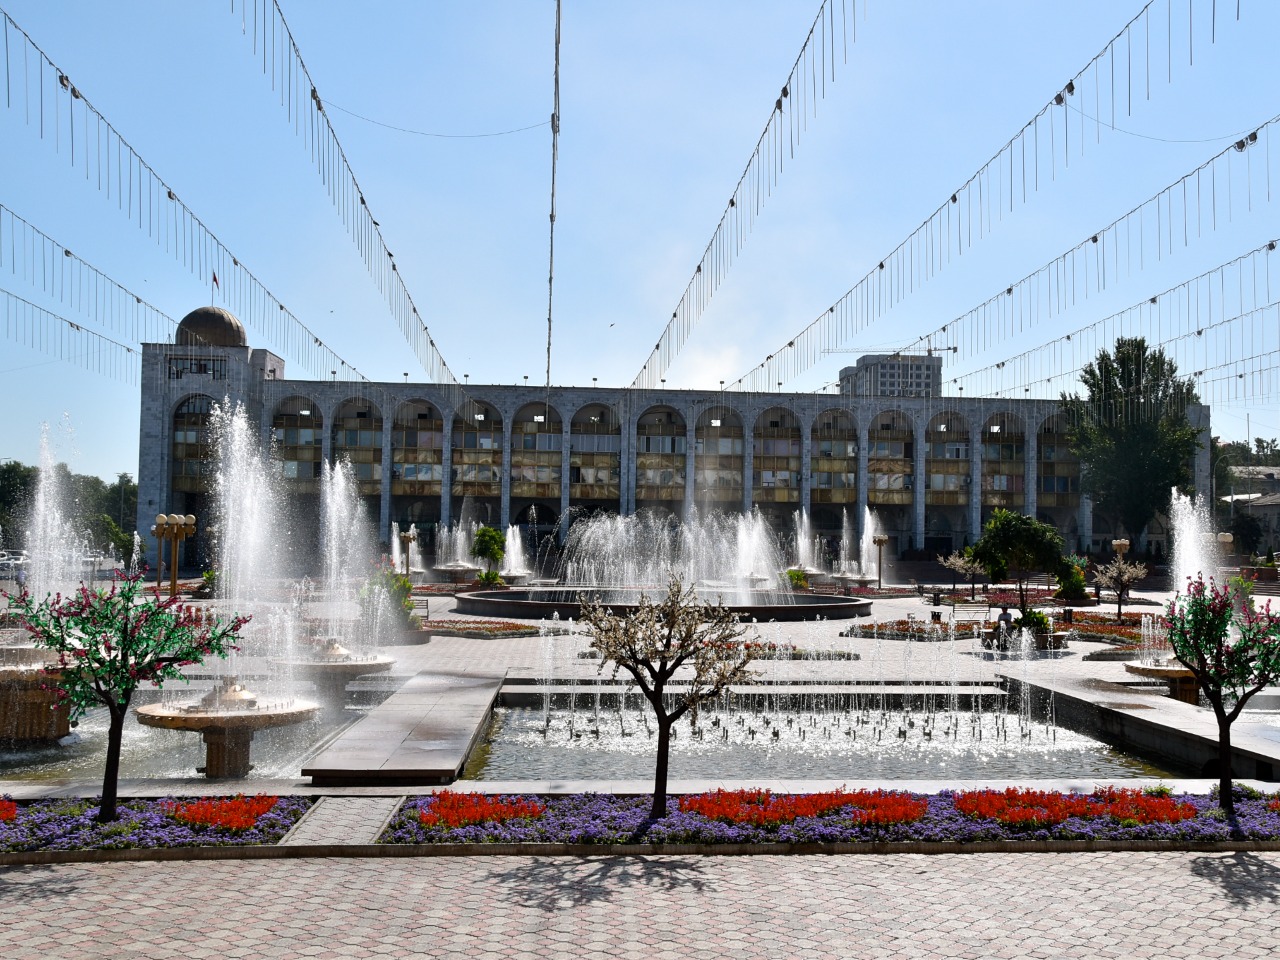 Знакомство с волшебным Бишкеком: главные локации | Цена 145€, отзывы, описание экскурсии